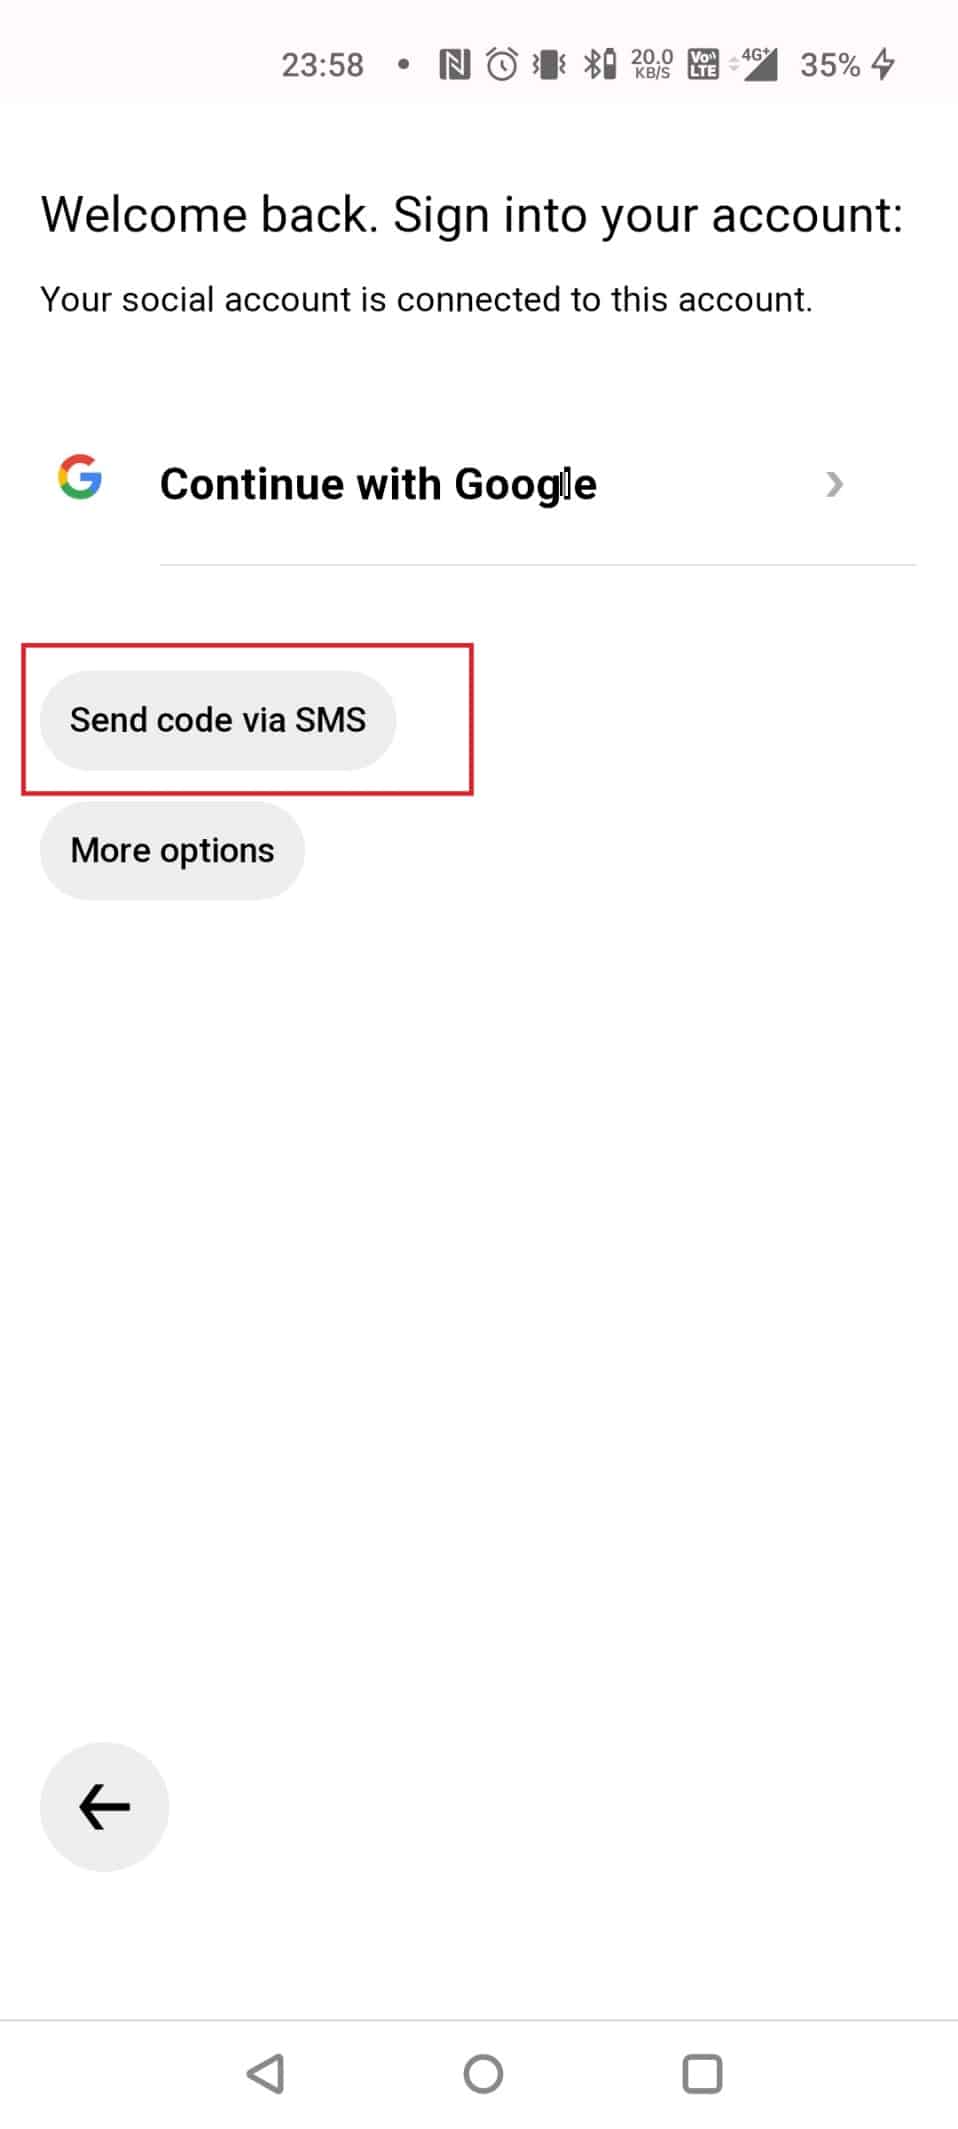 Choisissez Envoyer le code par SMS